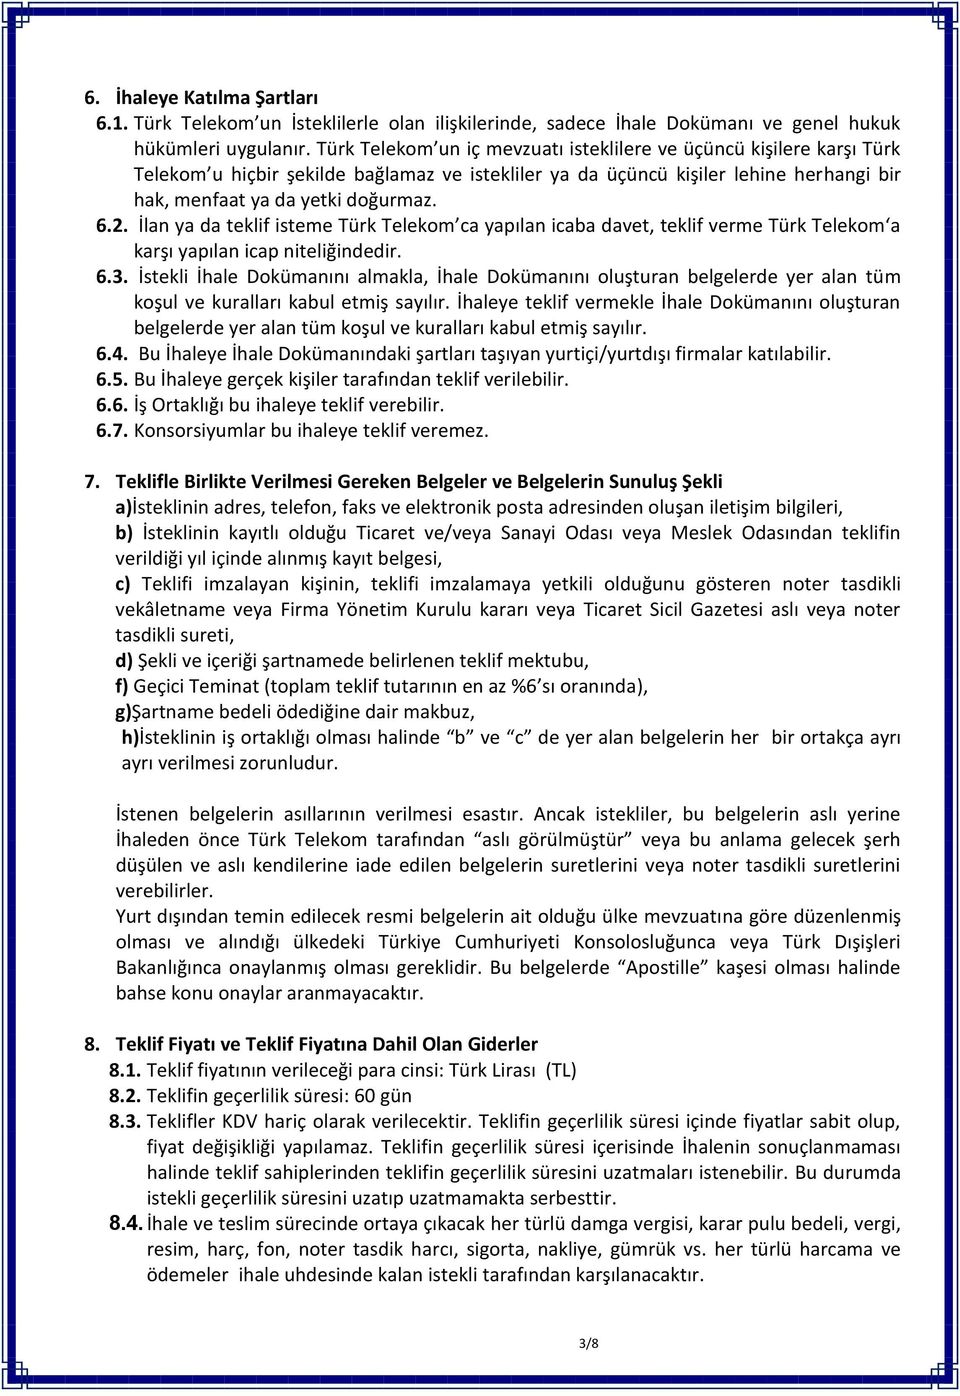 İlan ya da teklif isteme Türk Telekom ca yapılan icaba davet, teklif verme Türk Telekom a karşı yapılan icap niteliğindedir. 6.3.